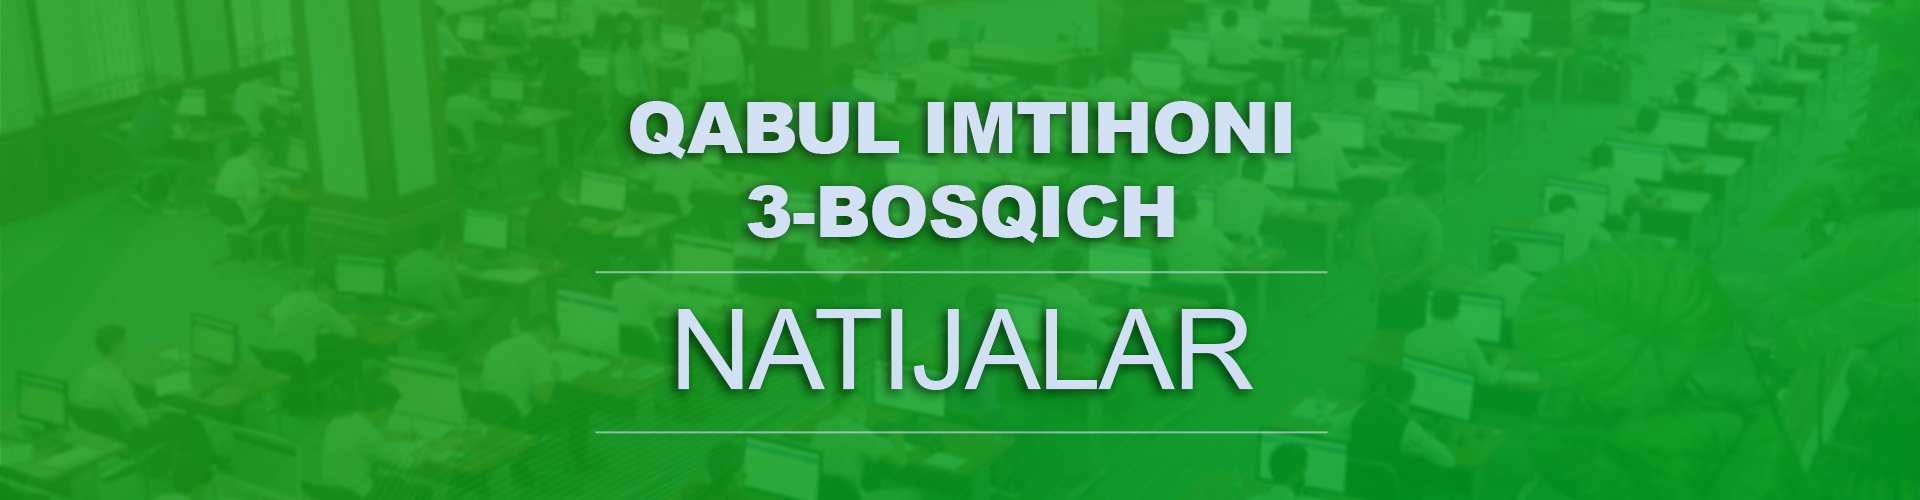 You are currently viewing Kirish imtihonlari (3-bosqich) natijalari e’lon qilindi!